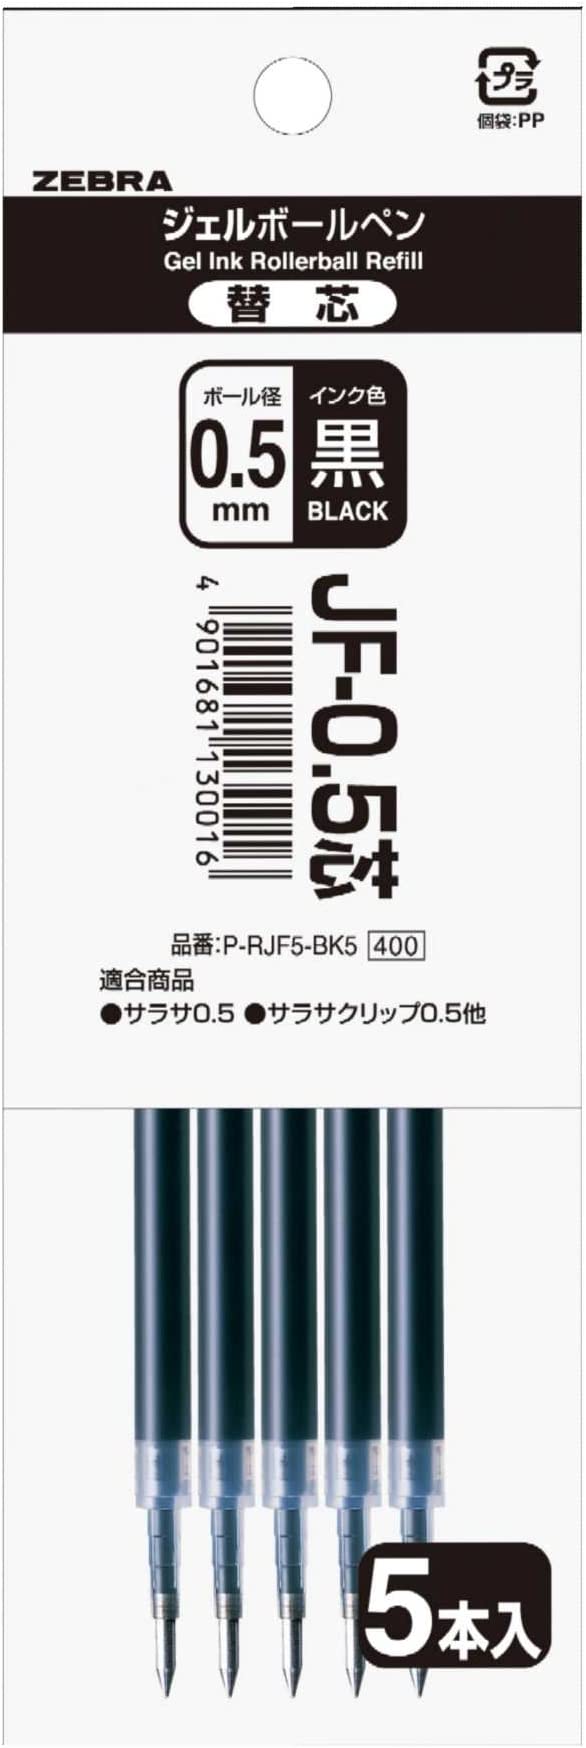  Zebra гель шариковая ручка изменение сердцевина Sara saJF-0.5 сердцевина чёрный 5шт.@P-RJF5-BK5 0.5mm